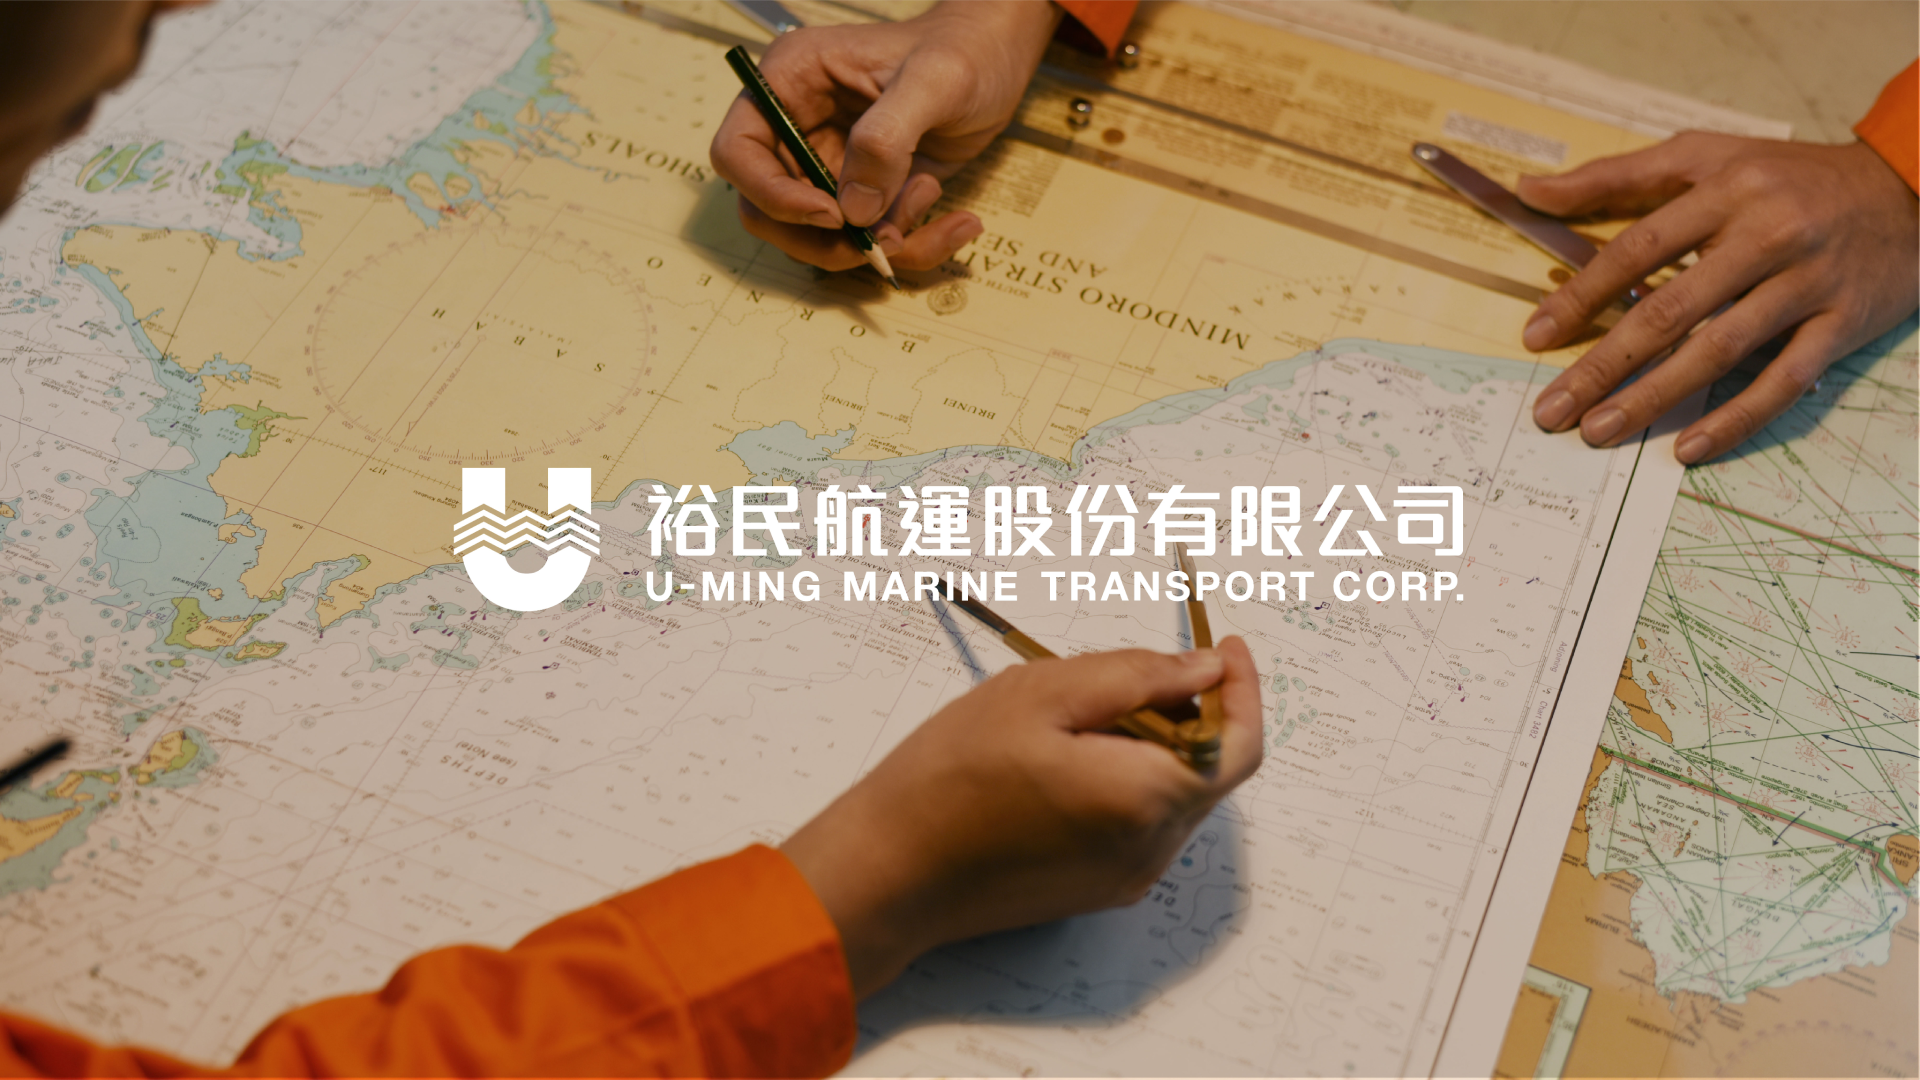 Yu 05 1 | 裕民航運企業識別形象更新專案